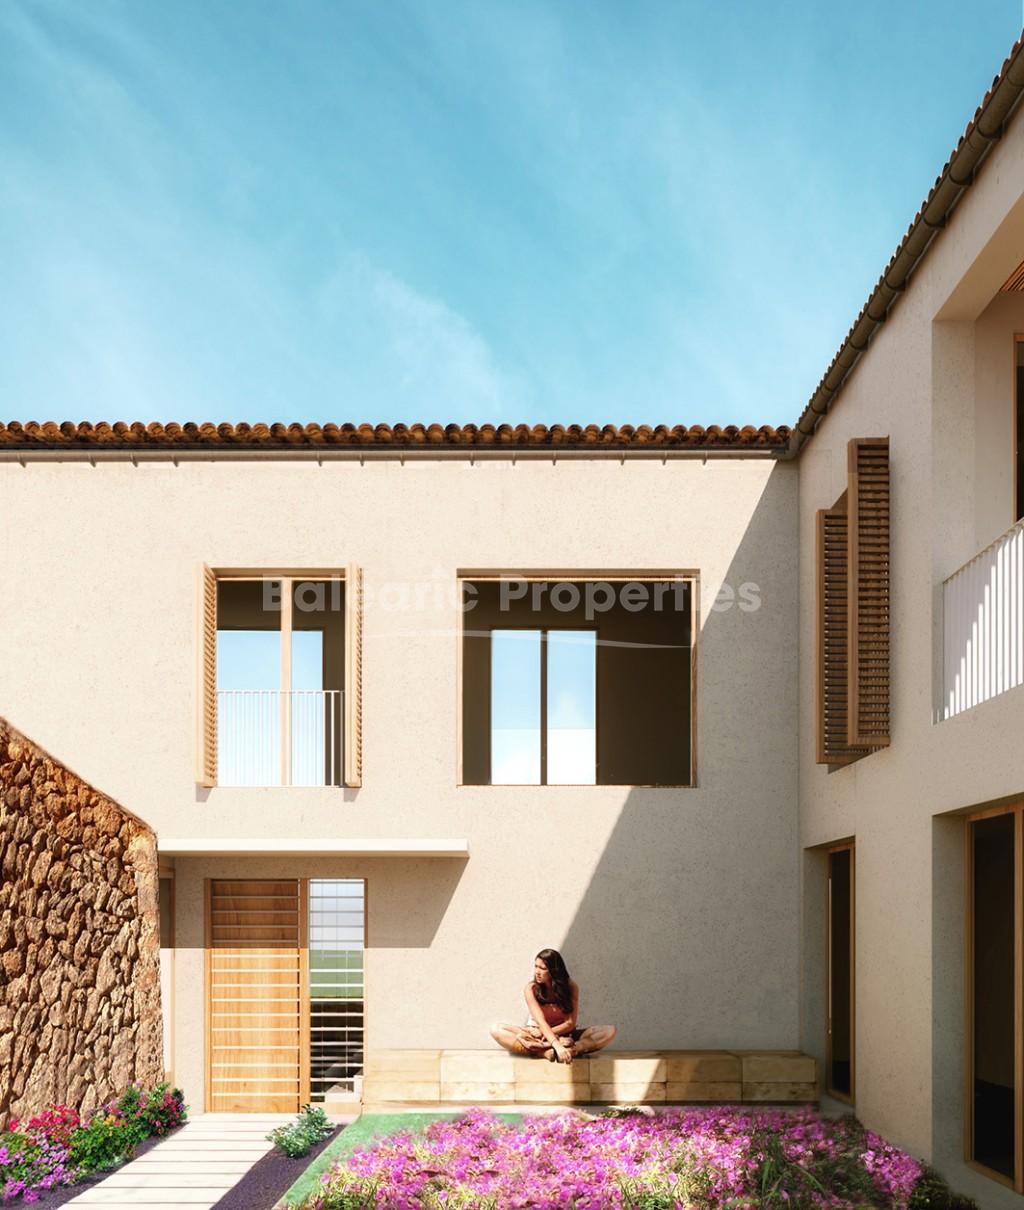 Gran terreno con proyecto aprobado para construir una villa de 4 dormitorios en venta cerca de Algaida, Mallorca